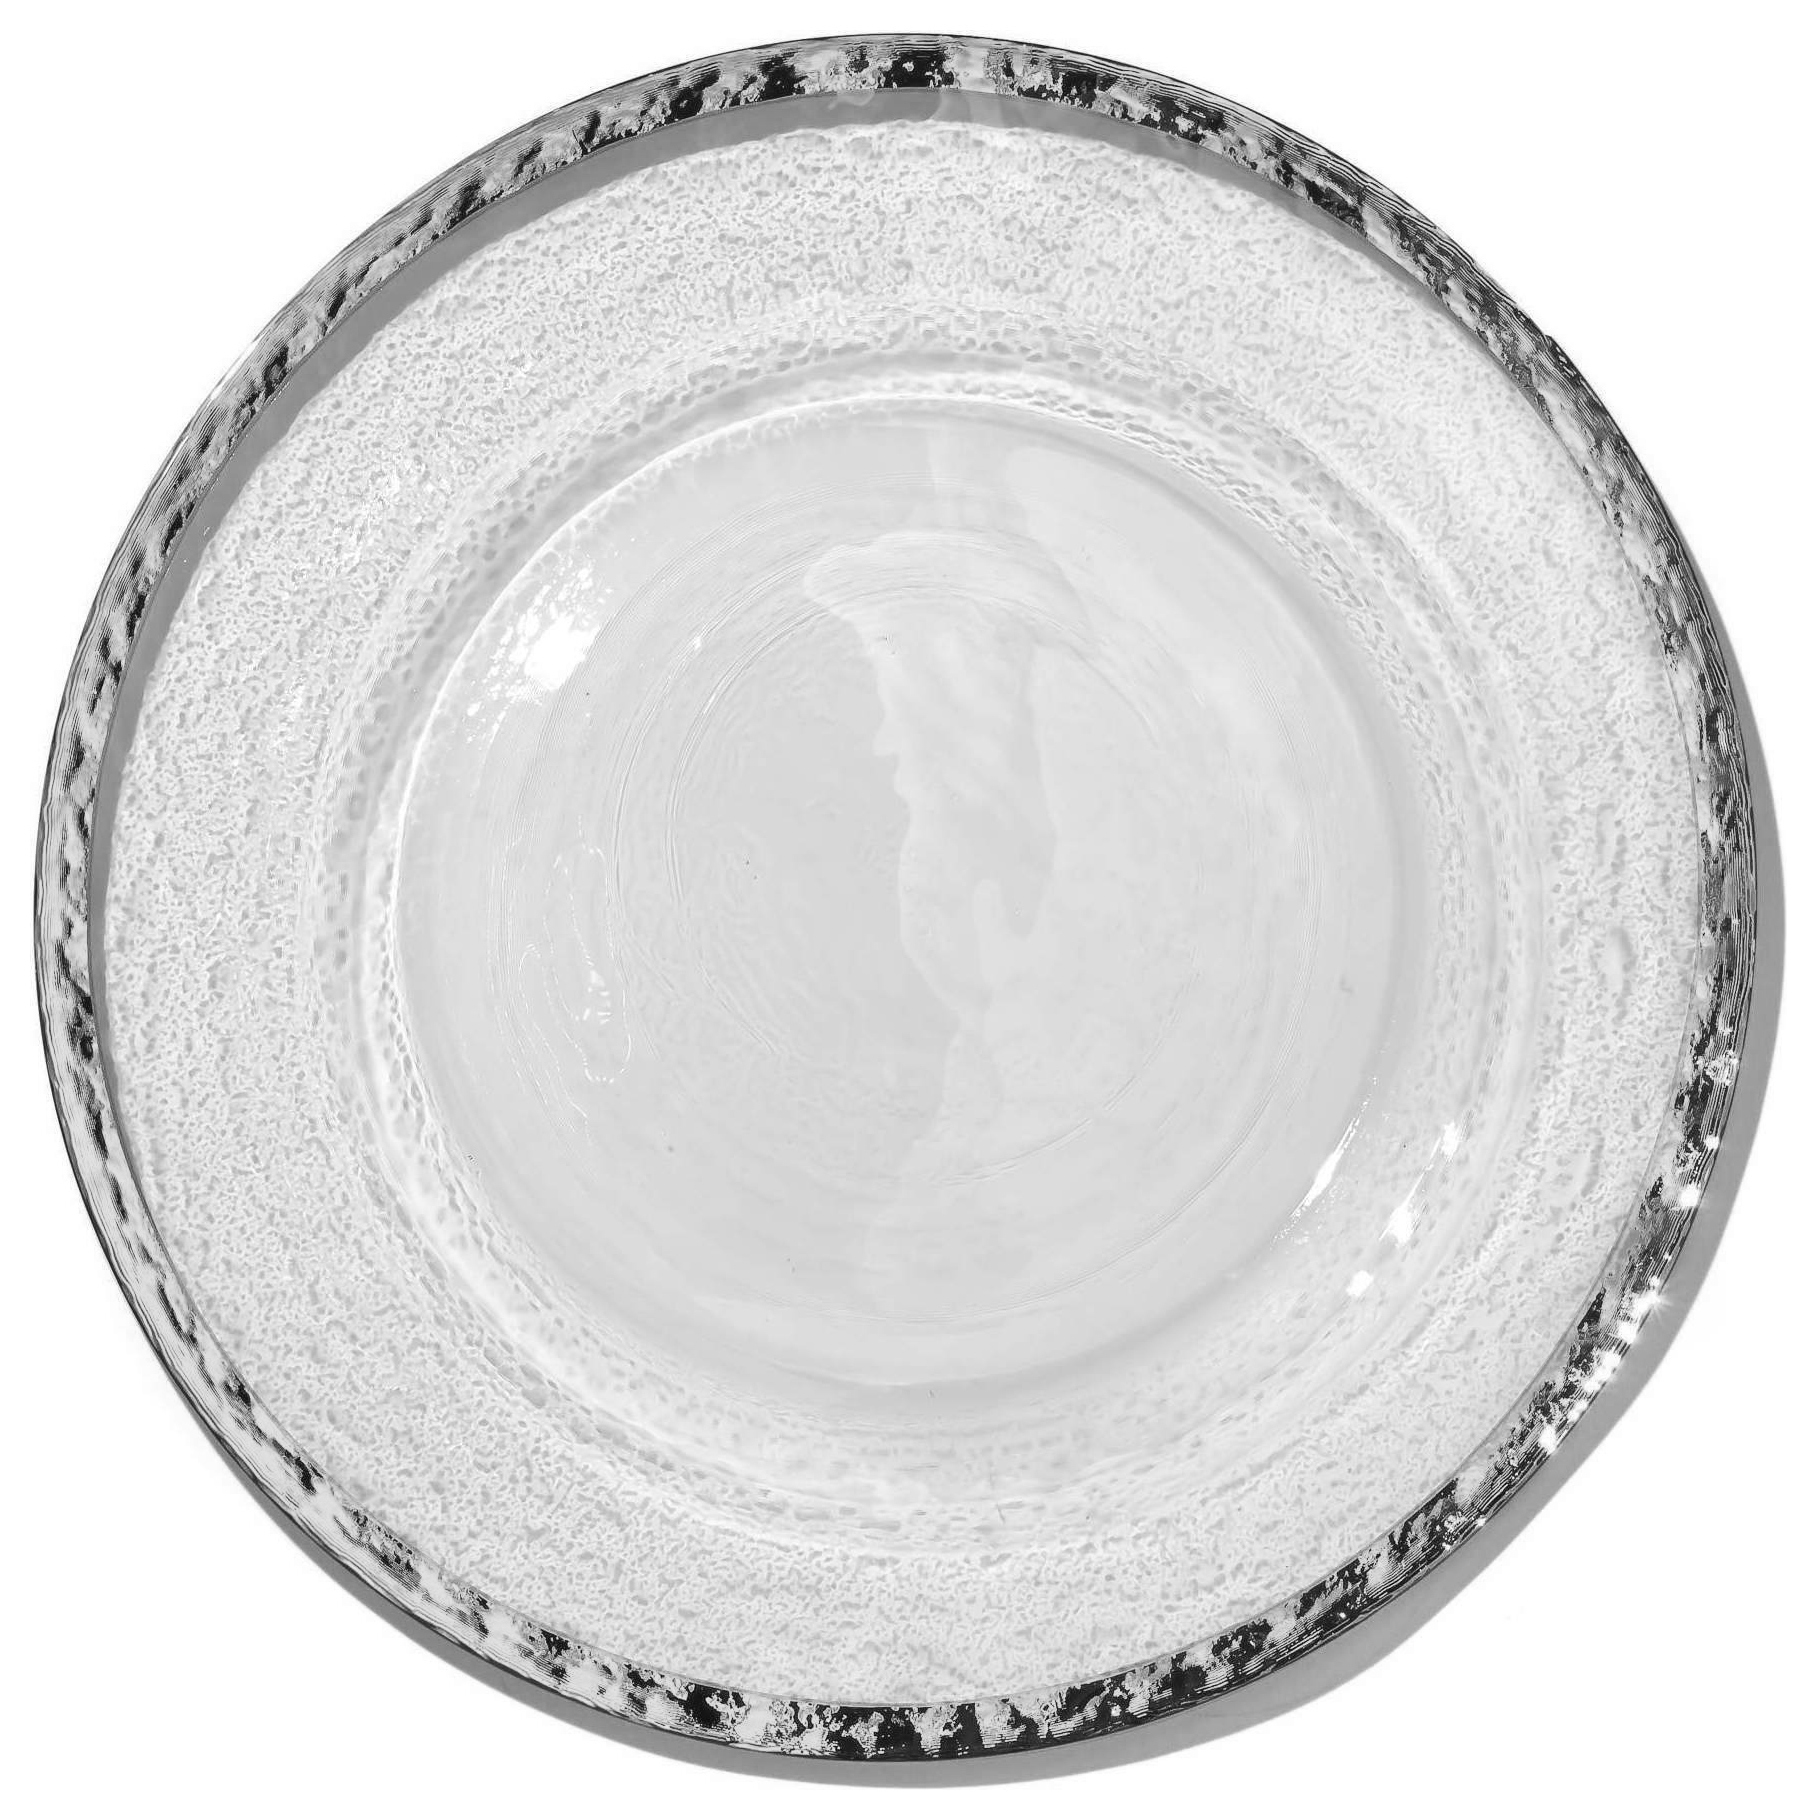 Каемка тарелки. Тарелки с серебряной каймой. Тарелки с серебристой каймой. Белые тарелки с серебристой каймой.